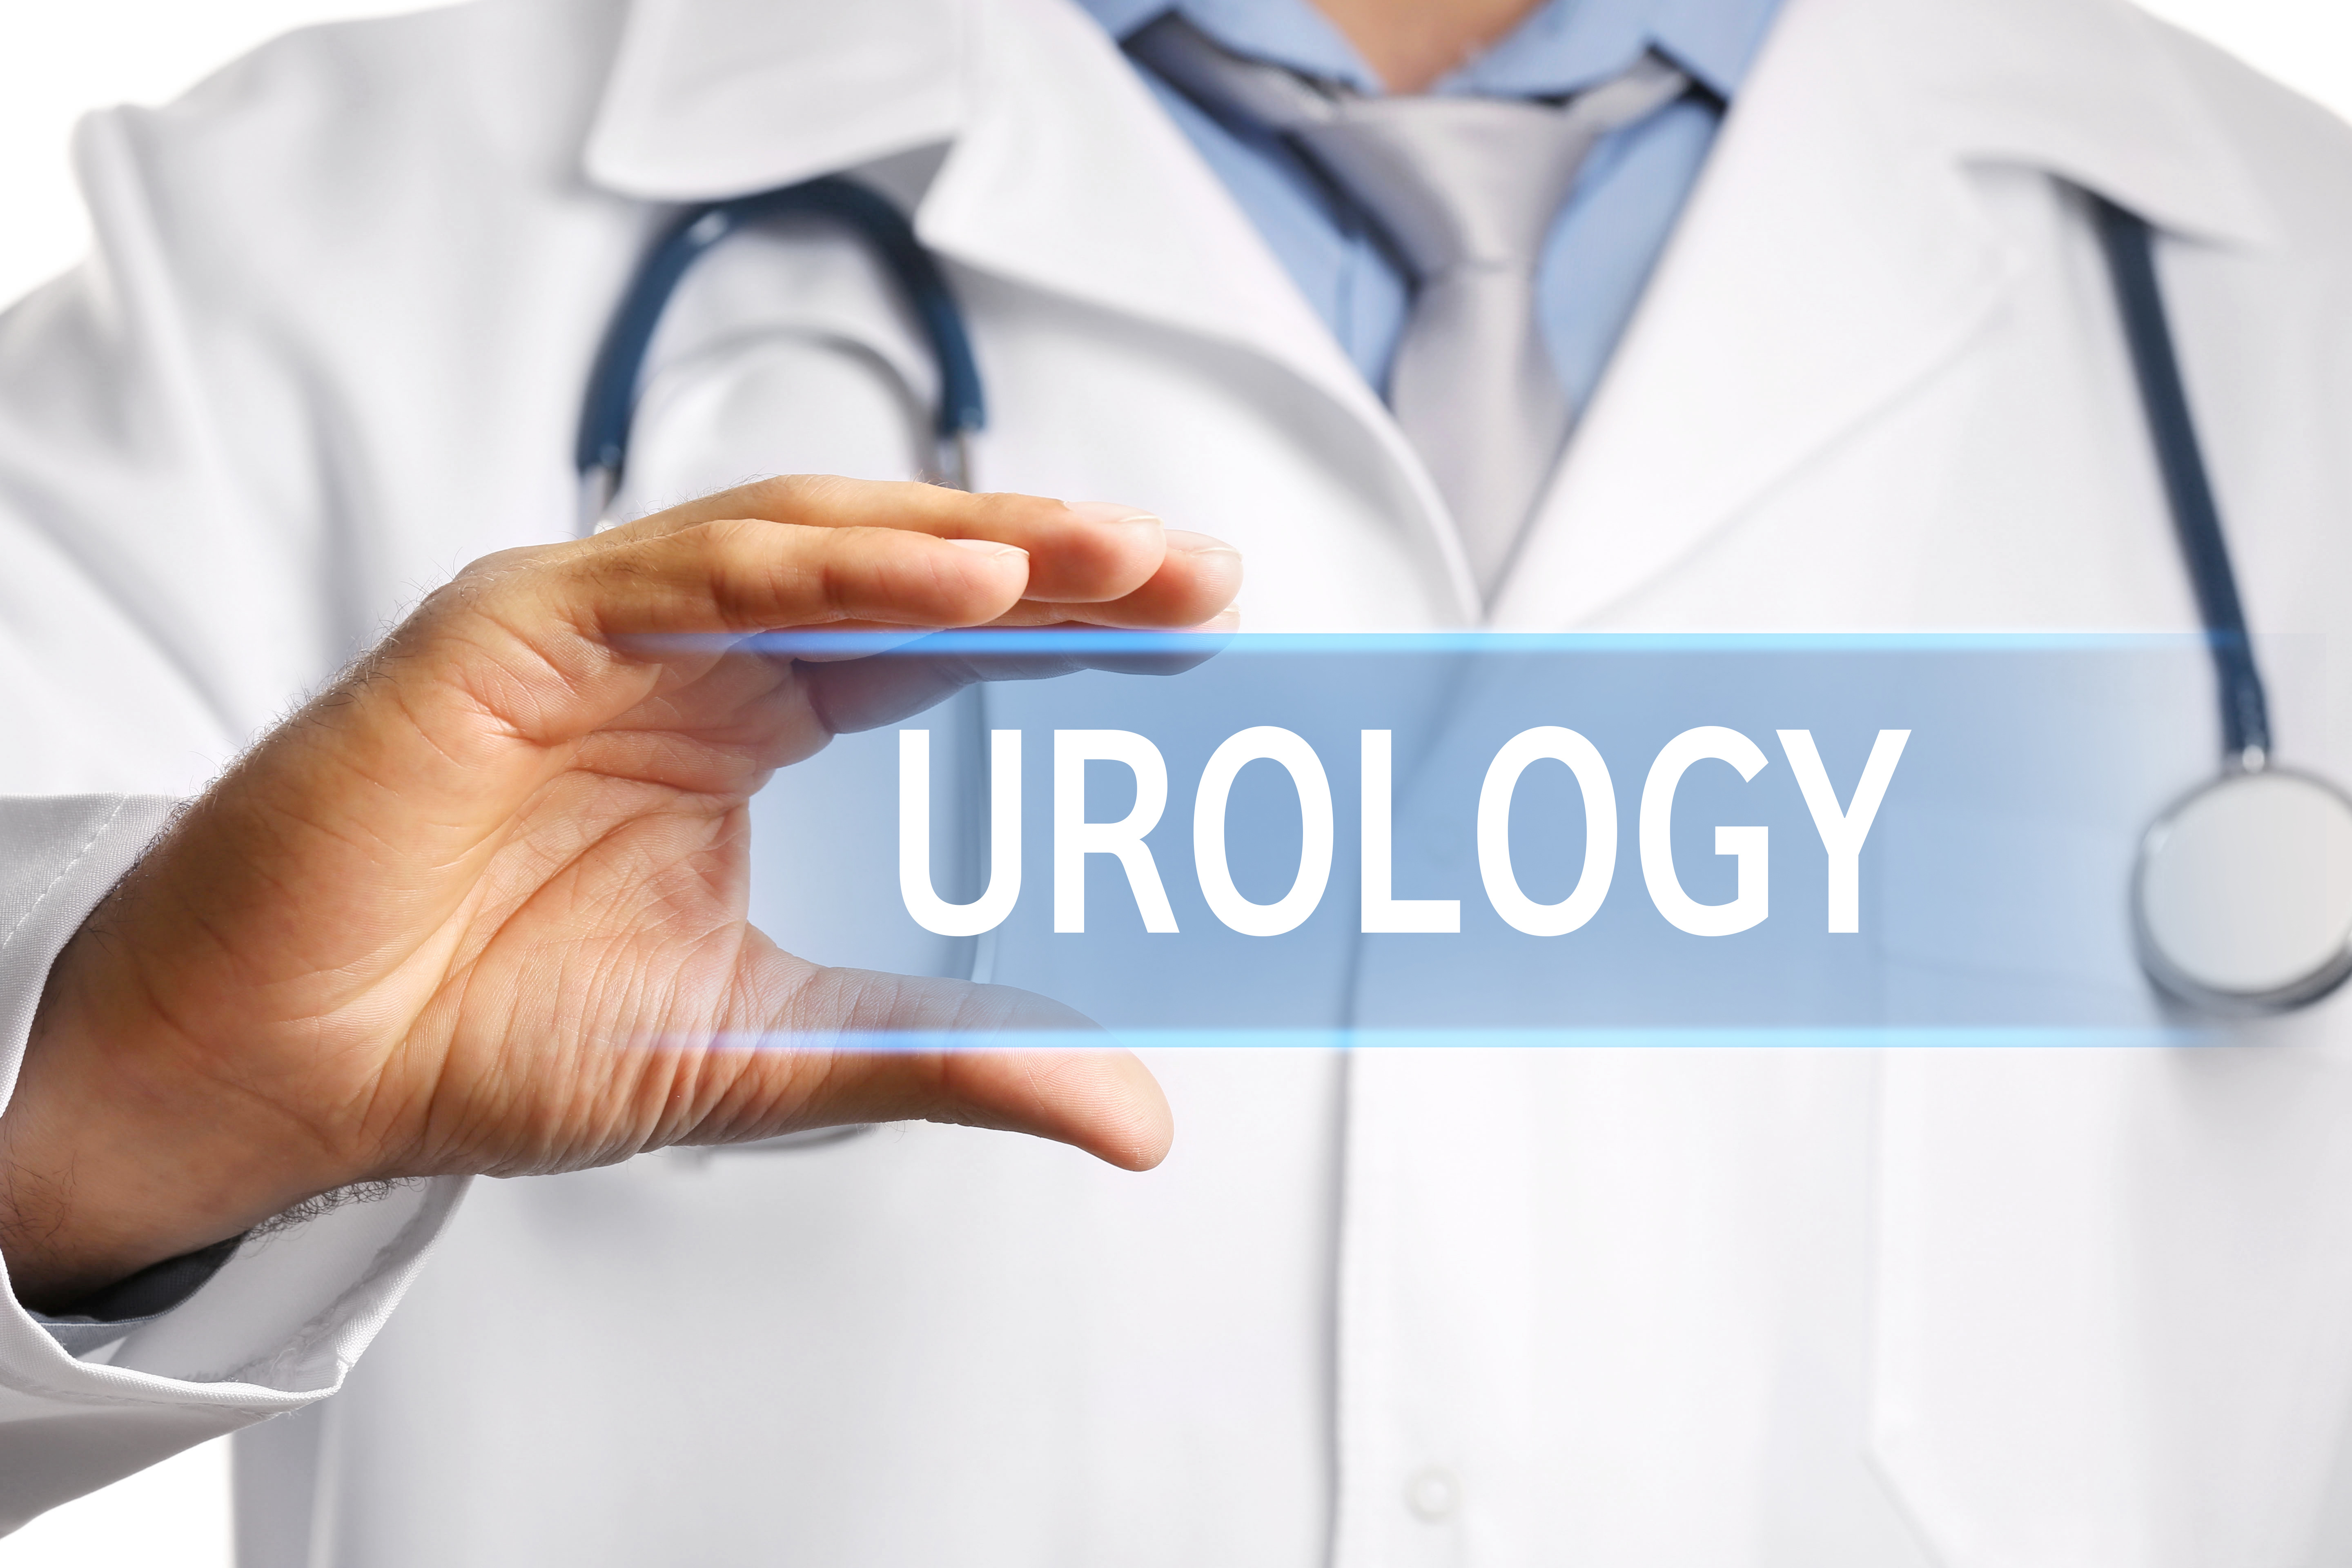 Urology, Z Urology